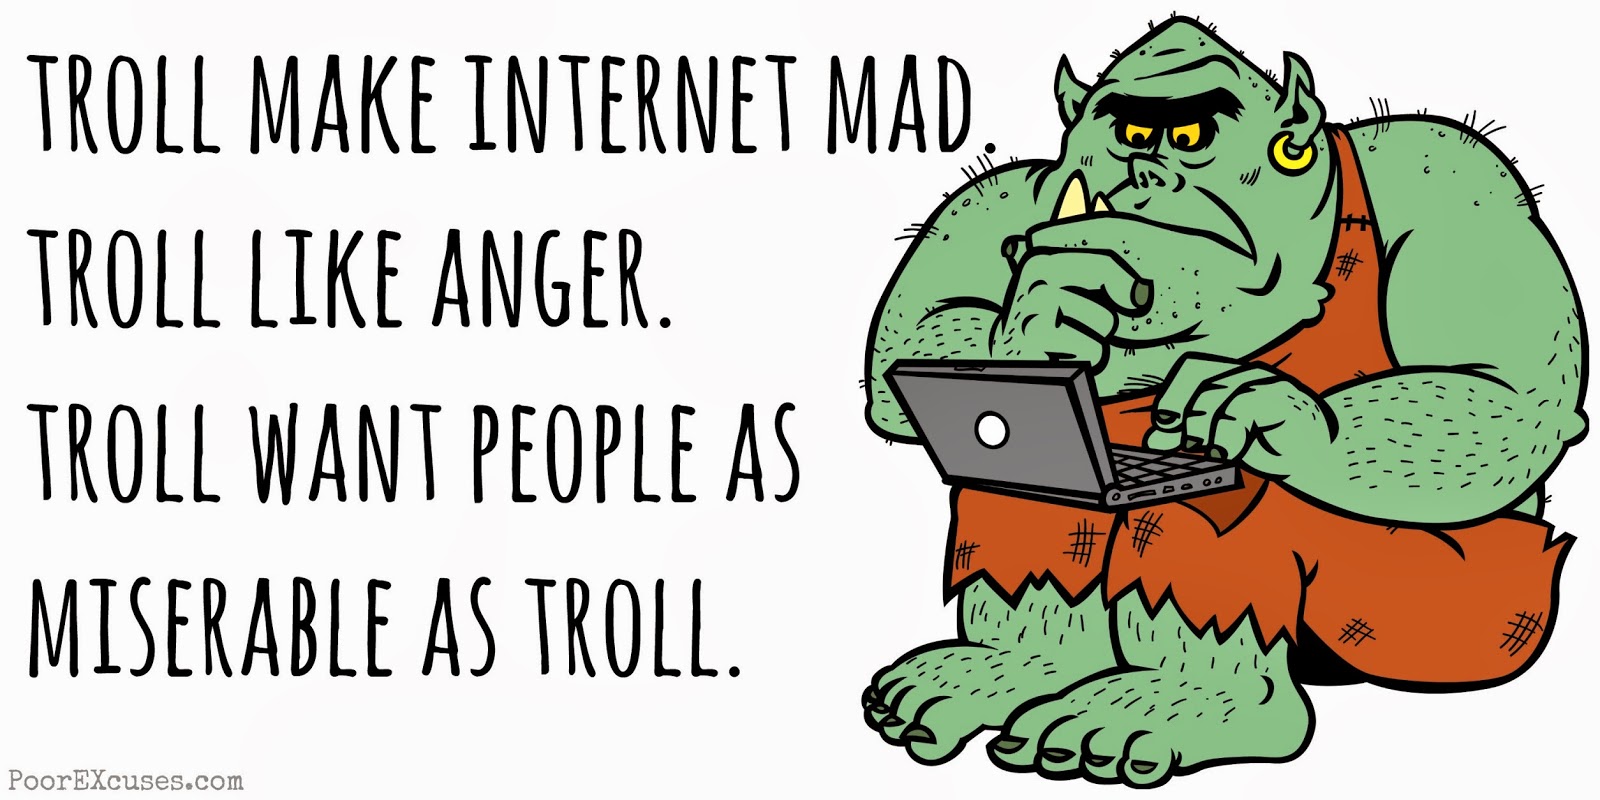 internet+troll.jpg